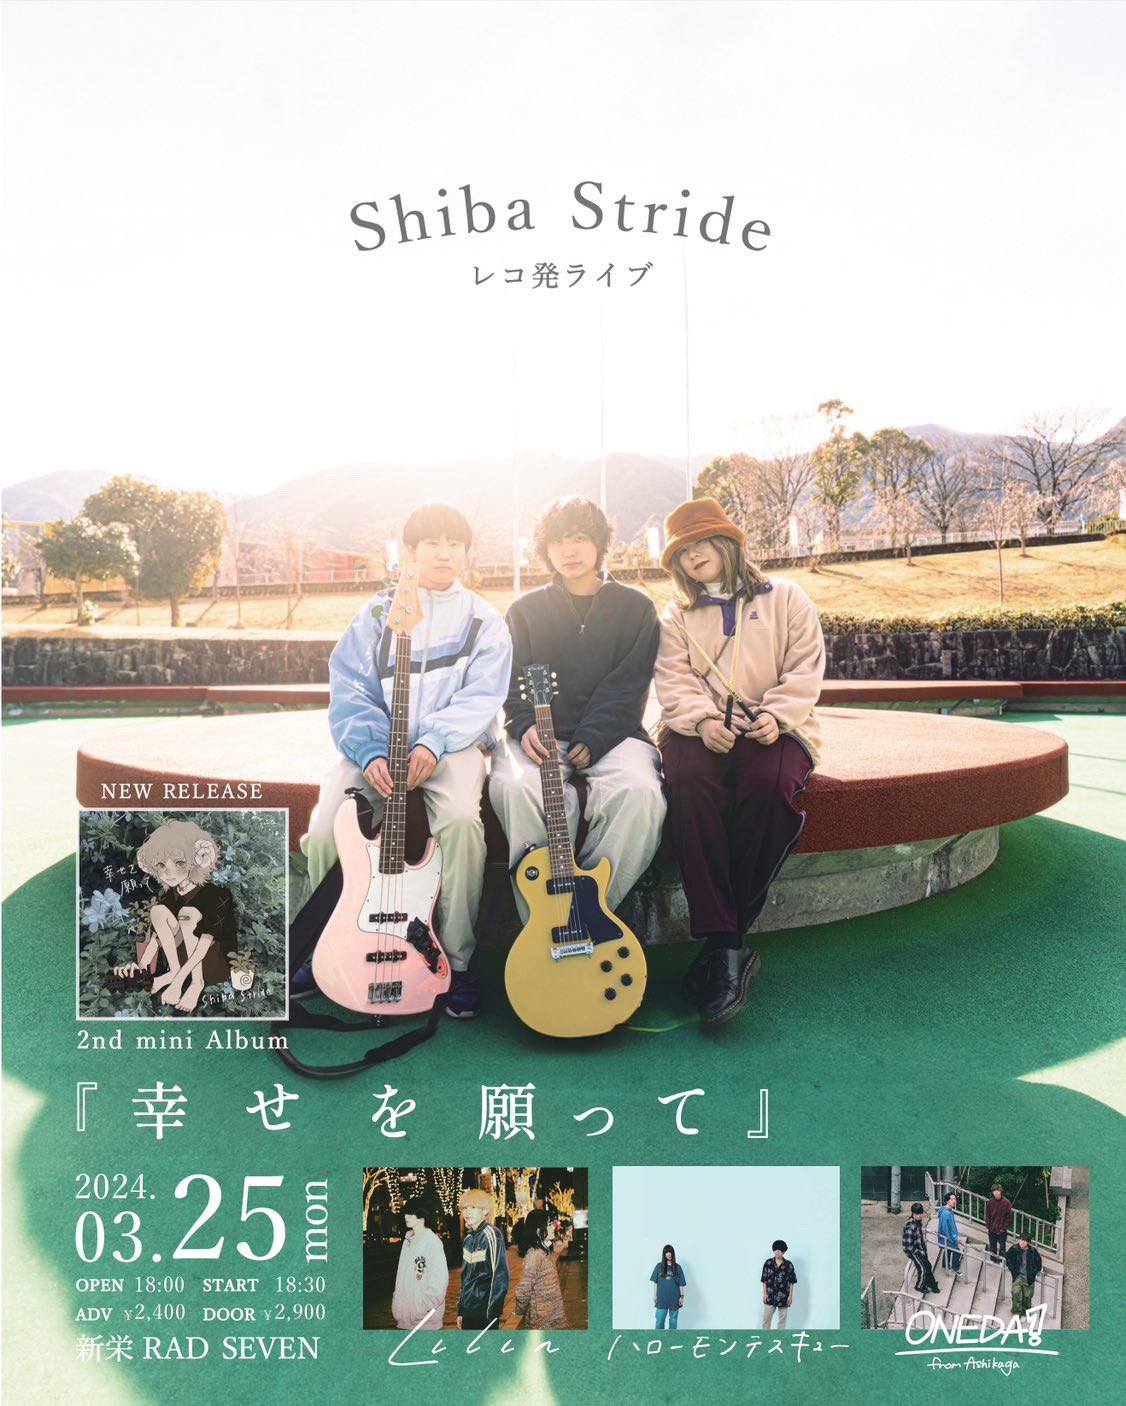 Shiba Stride レコ発ライブ 『幸せを願って』 - 名古屋RAD HALL 